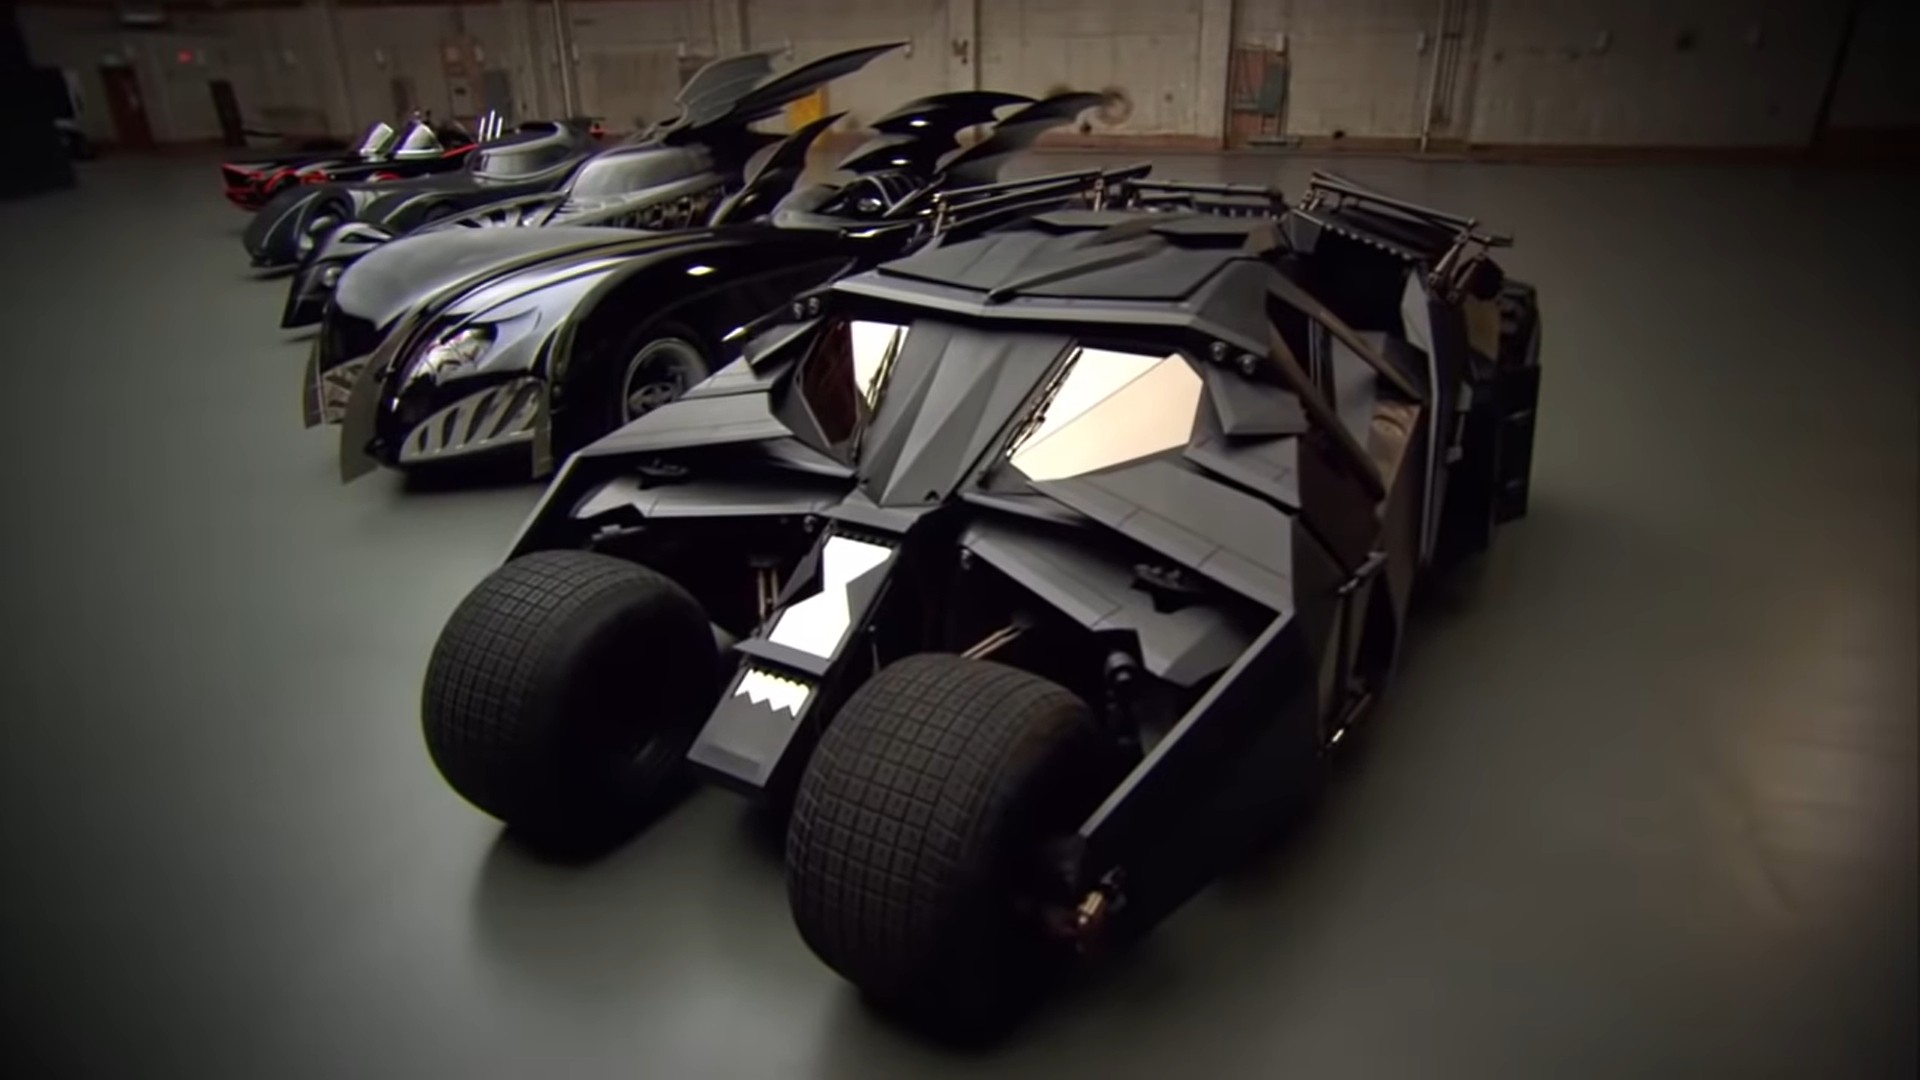 Δείτε όλα τα αυτοκίνητα του Batman σε ένα υπέροχο ντοκιμαντέρ [vid]